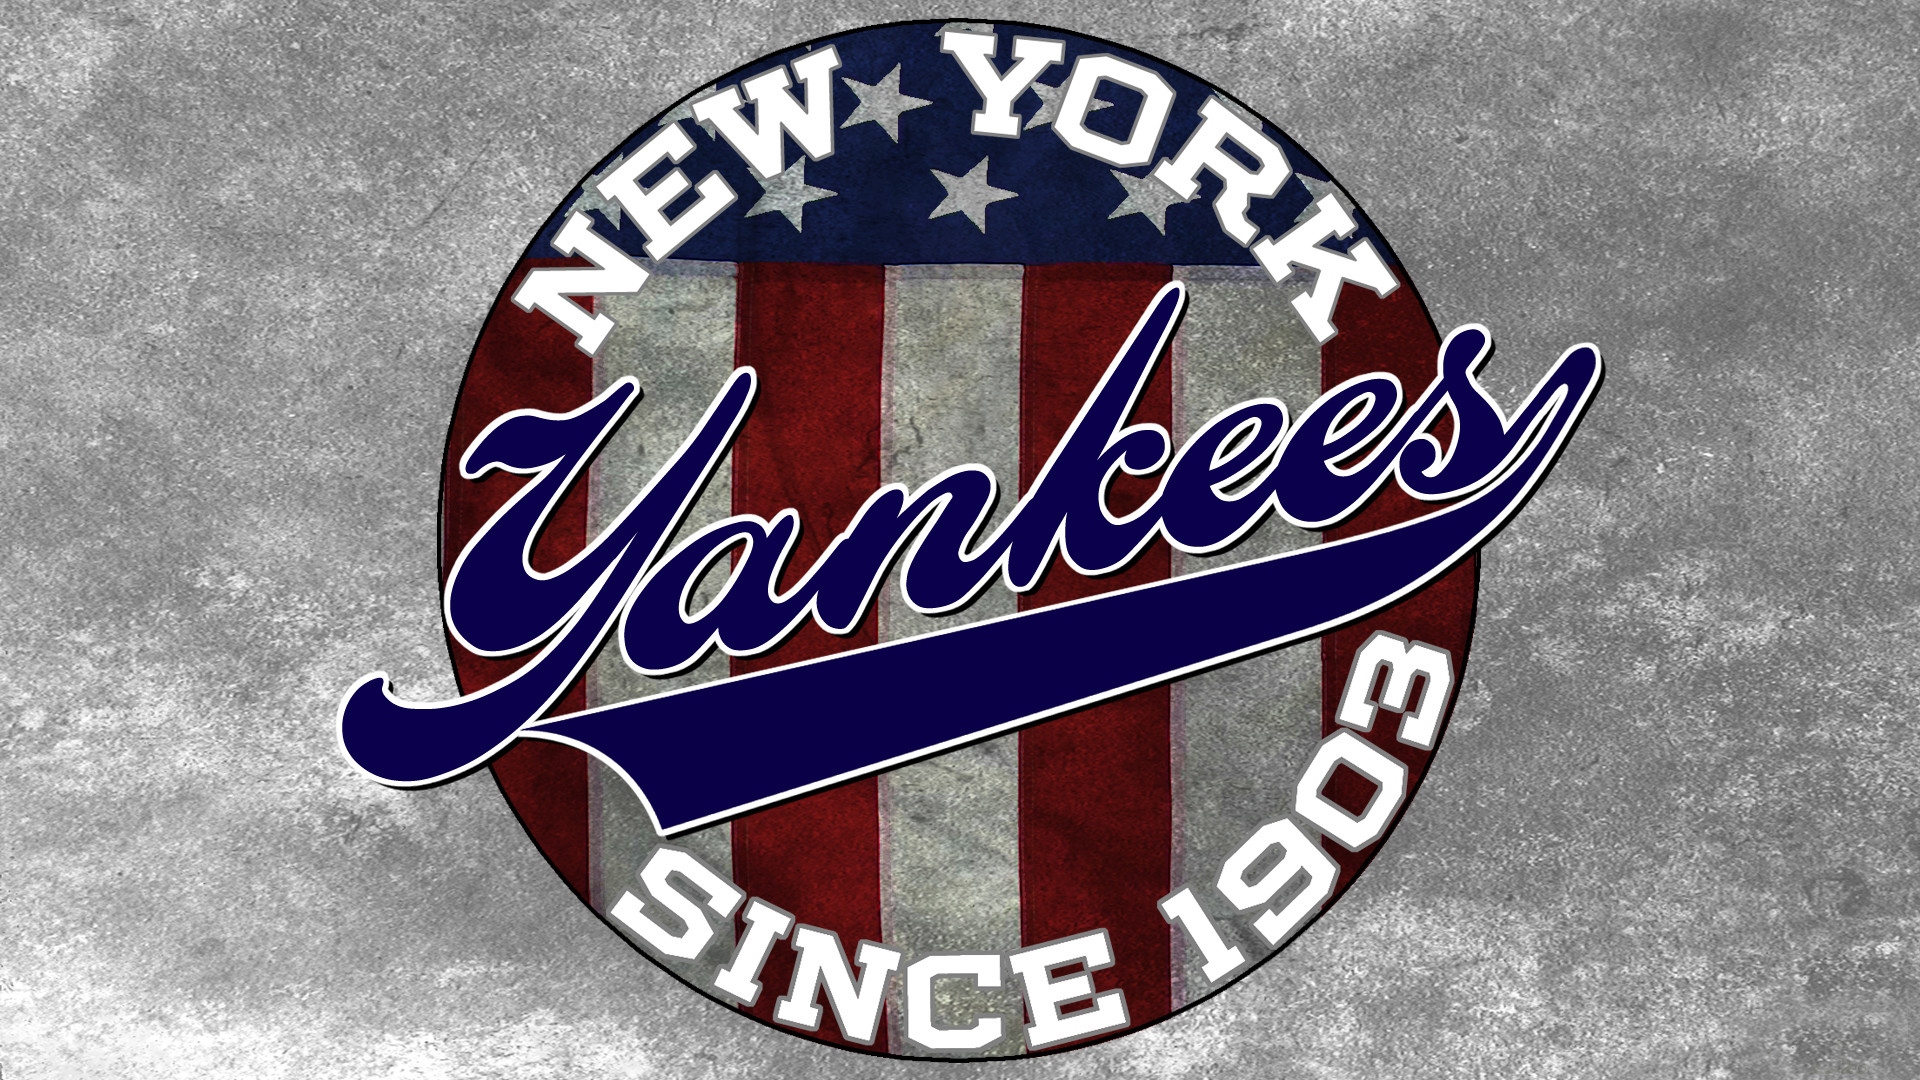 Ny yankees since 1903